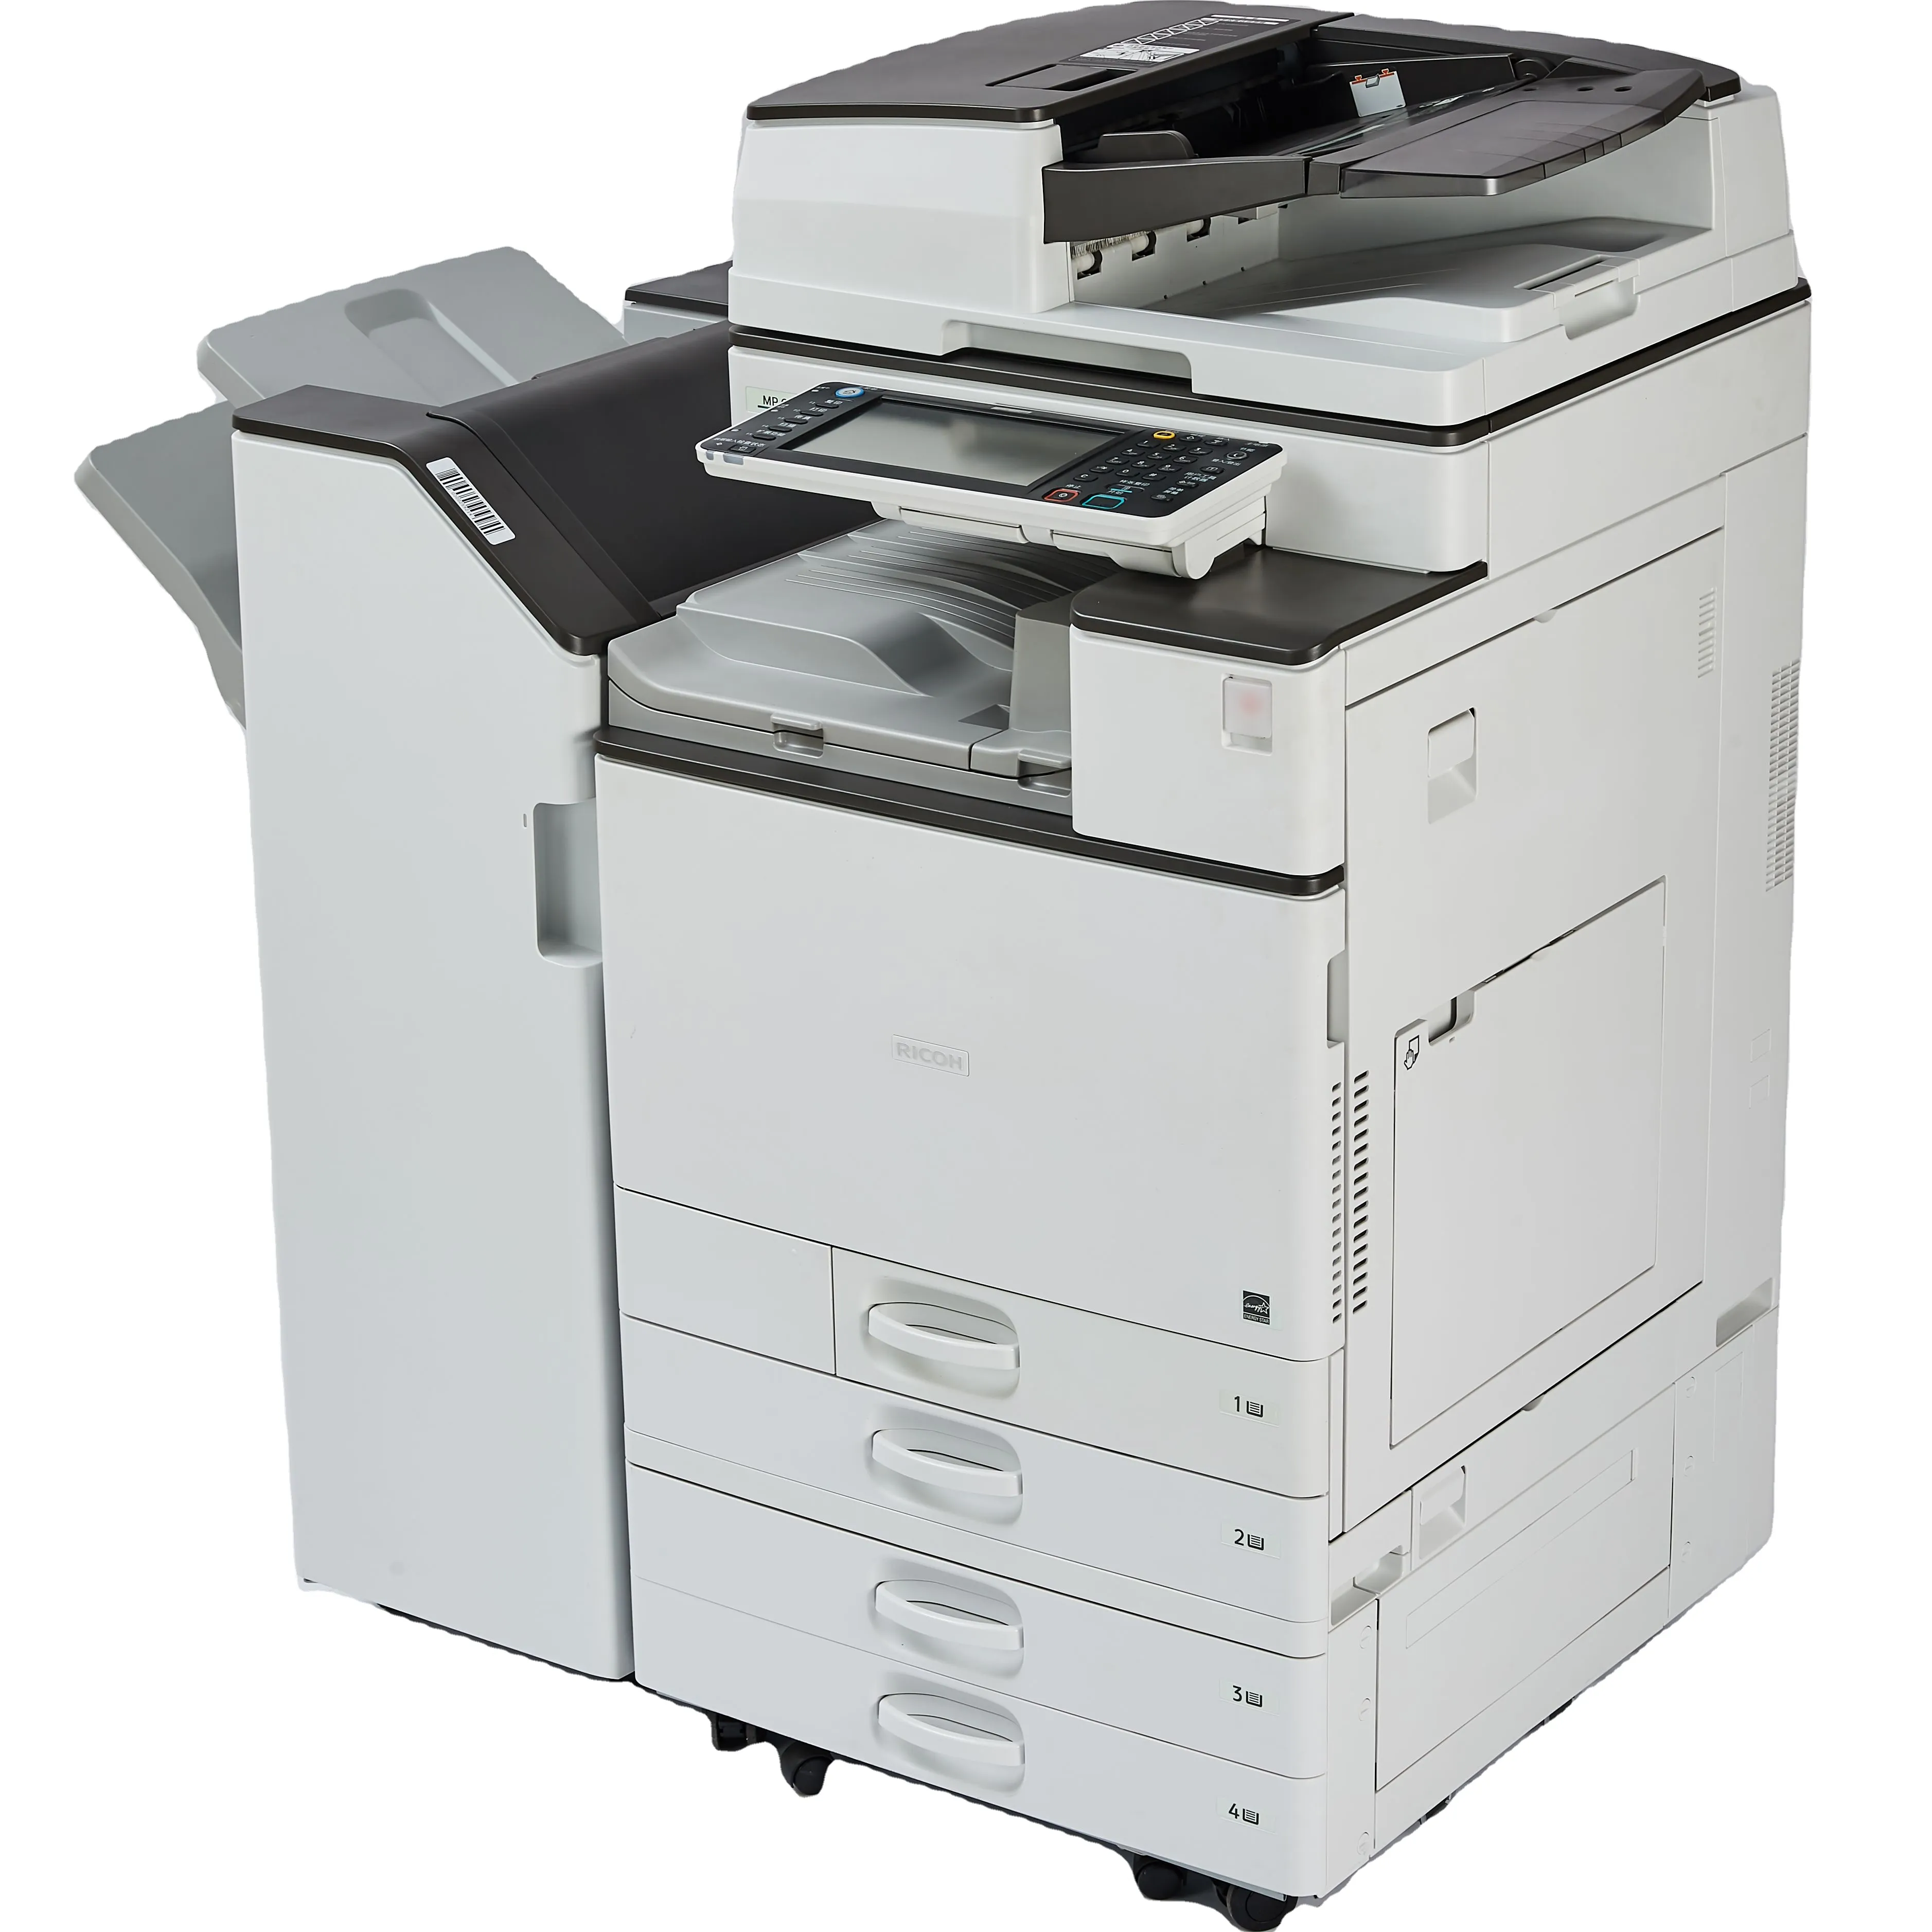 Yenilenmiş fotokopi makineleri Ricoh Mp C3503 yenileme fotokopi iyi klimalı fotokopi makinesi renkli lazer ofis yazıcıları